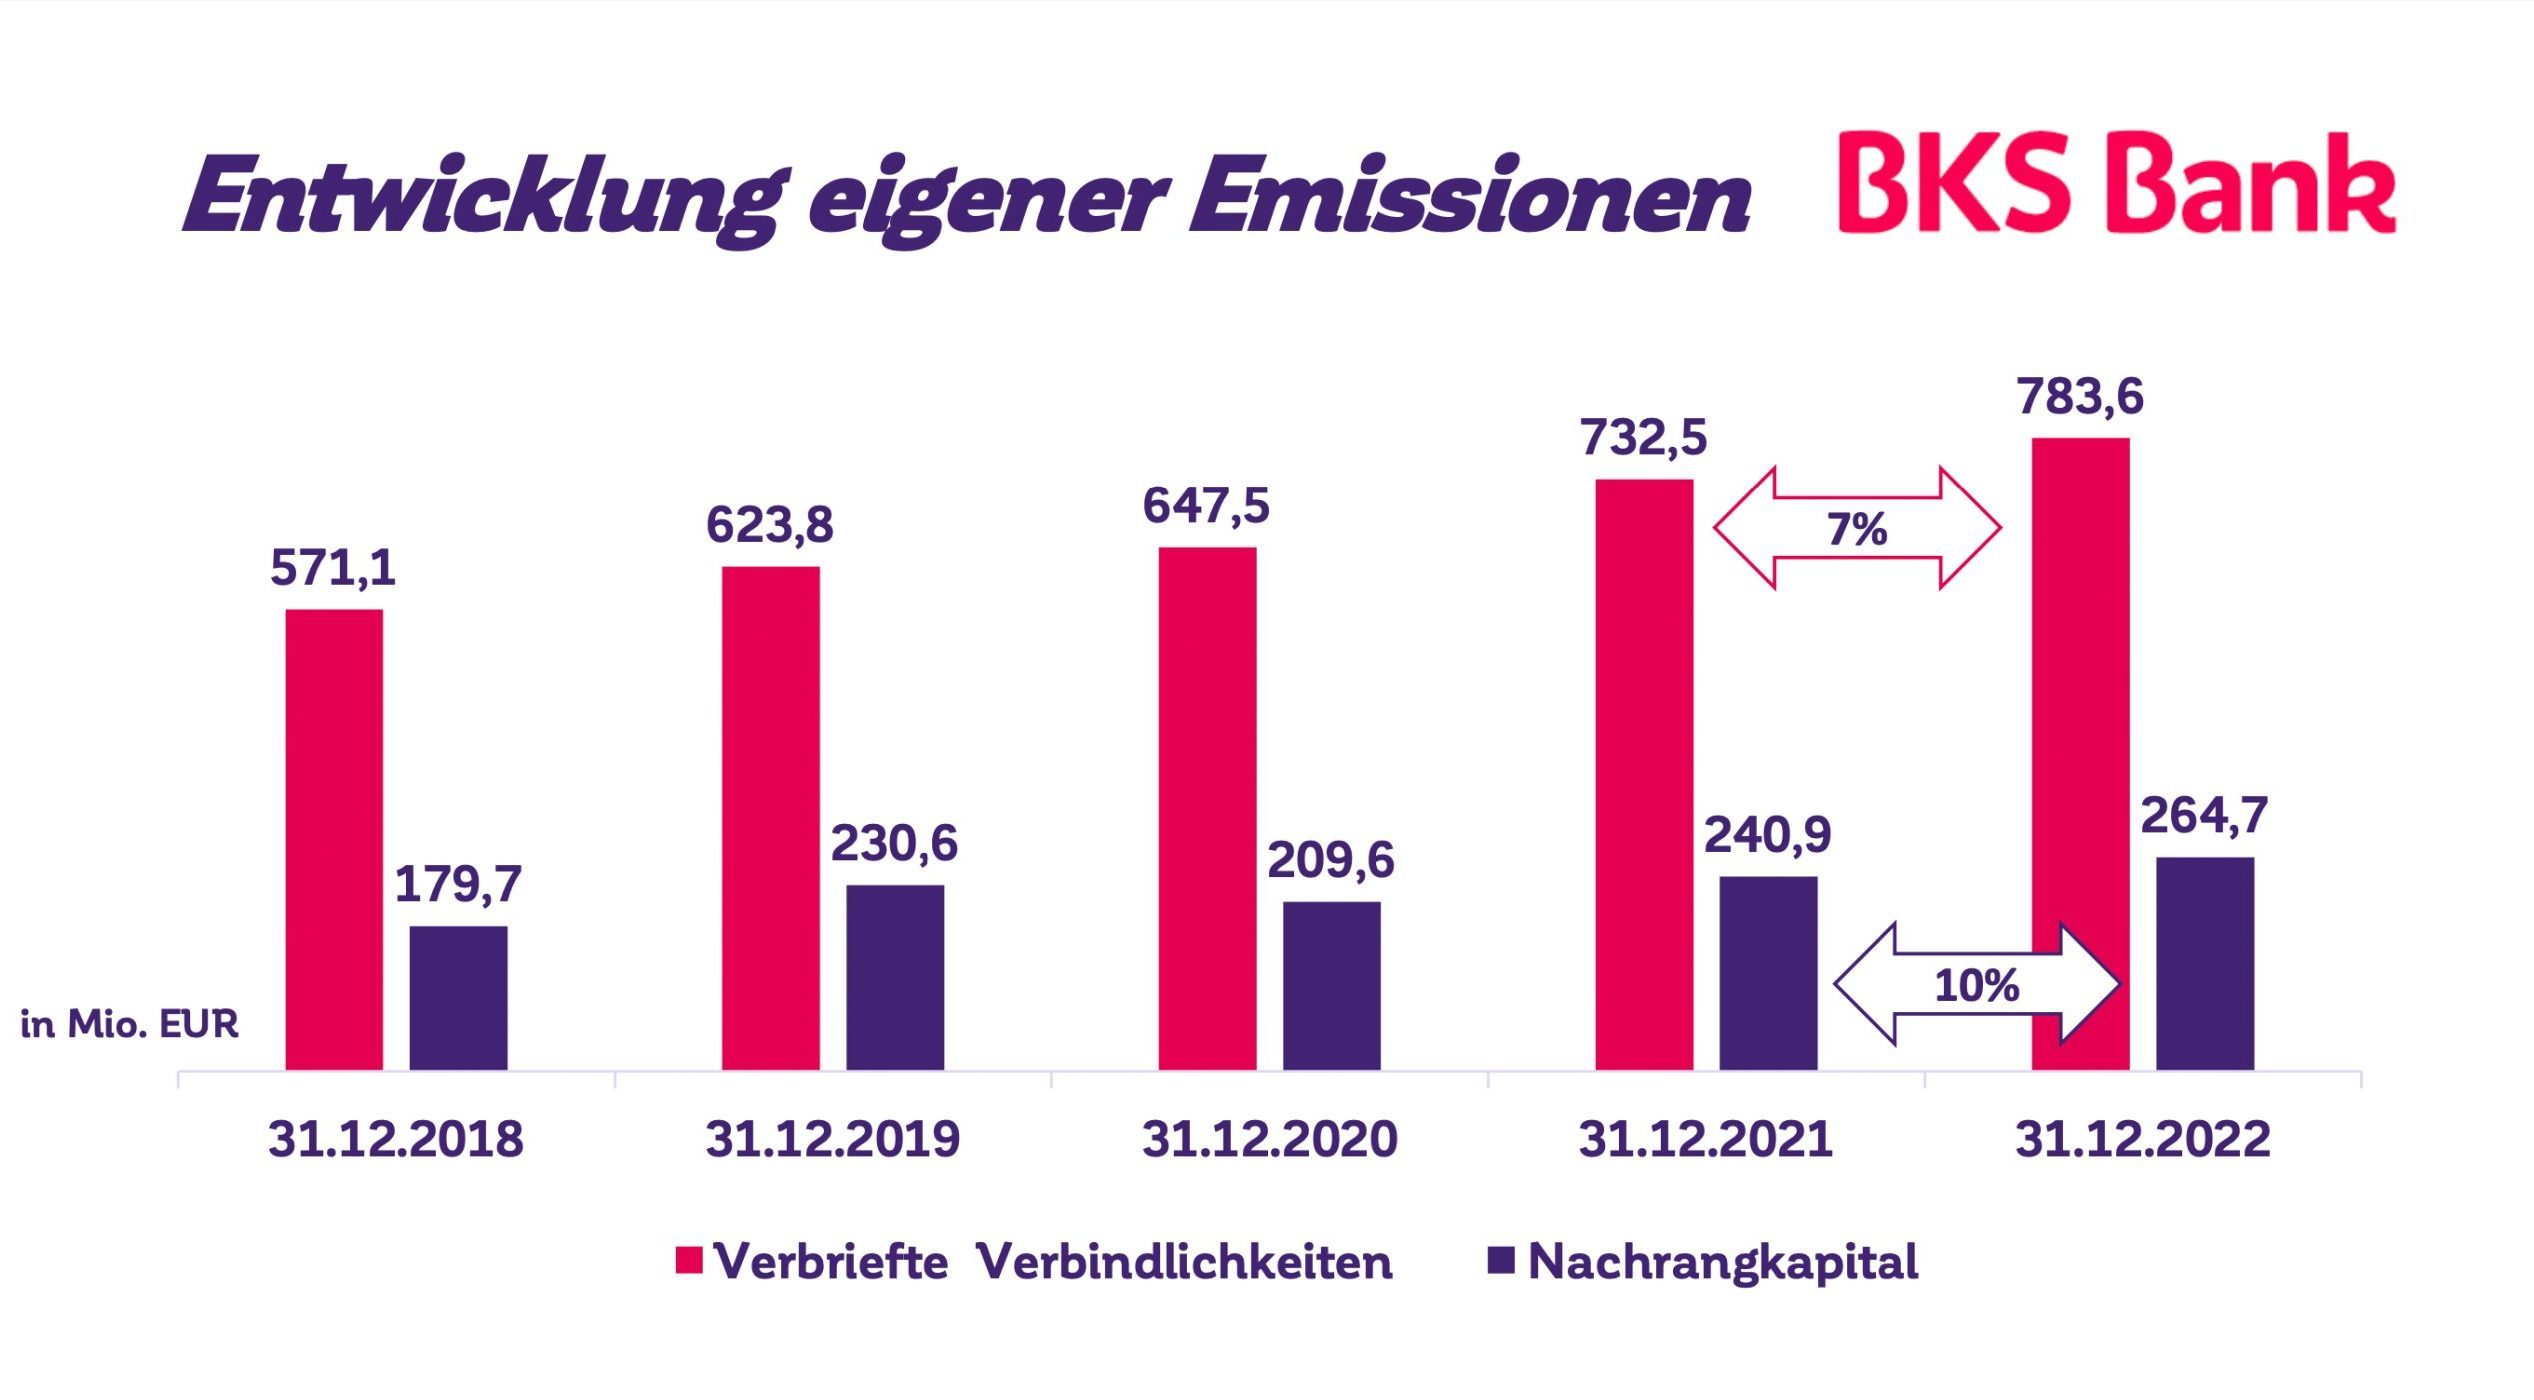 BKS Bank als Nachhaltigkeitsvorreiterin unter Österreichs Banken